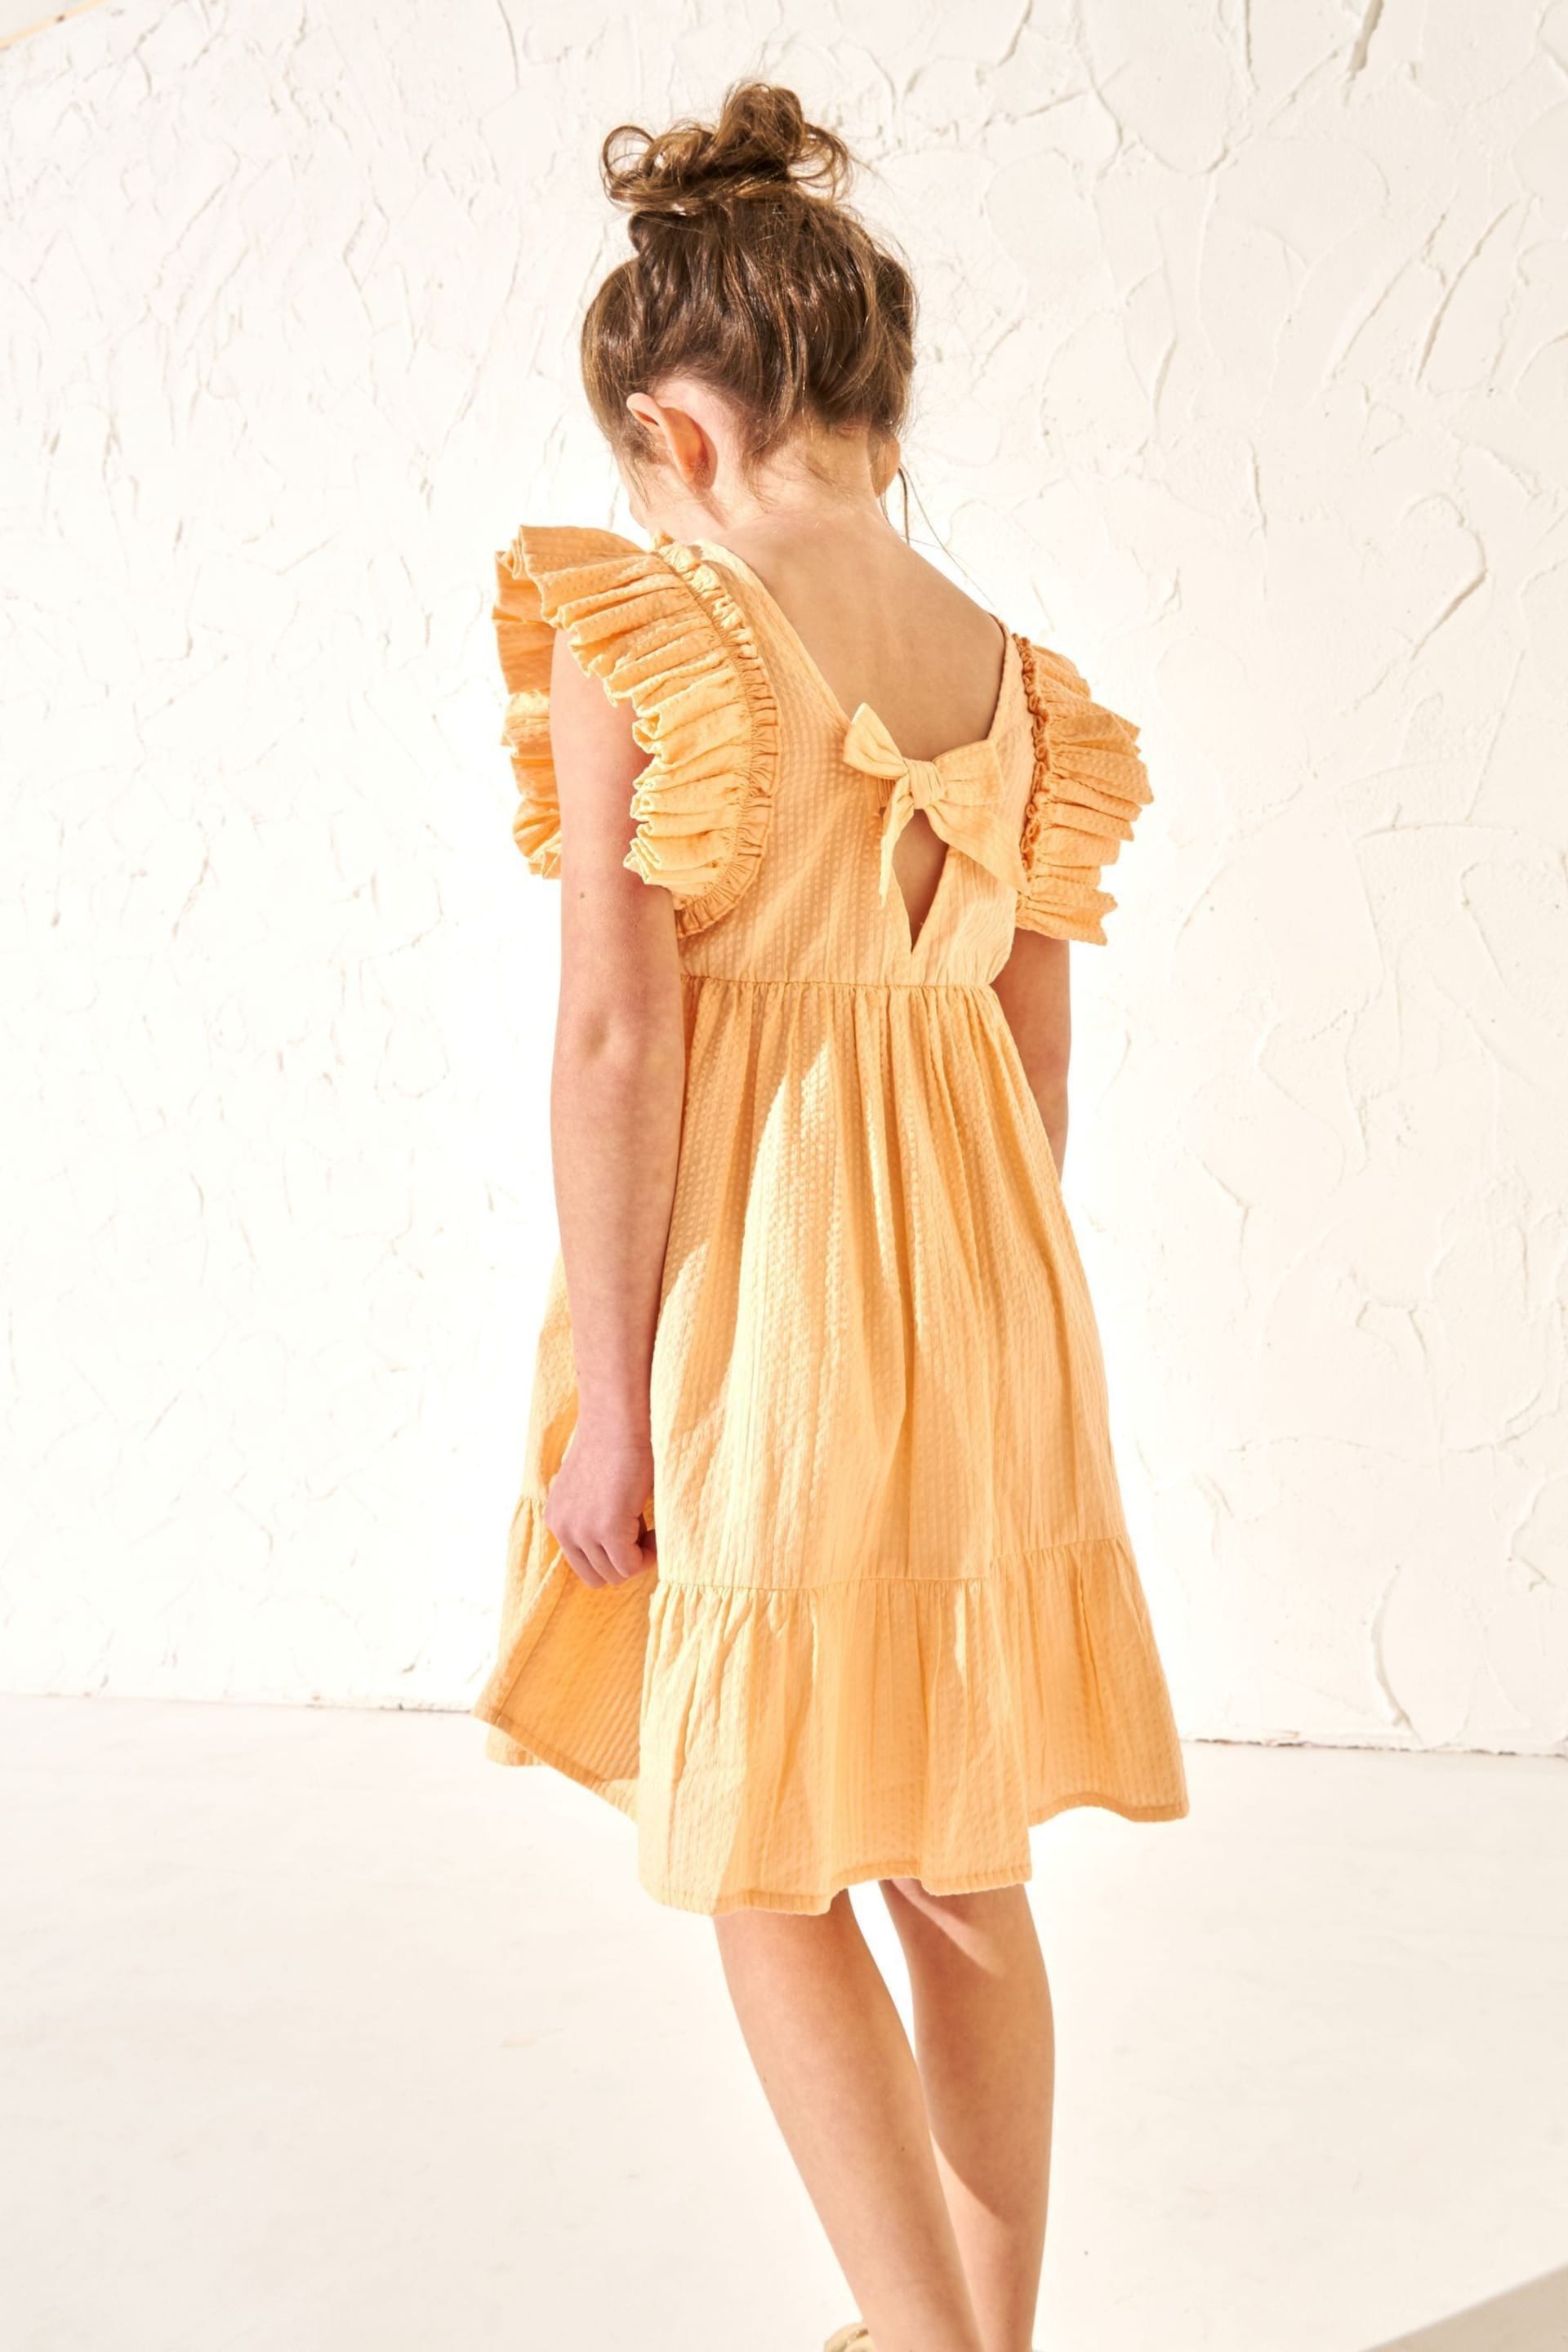 Angel & Rocket Orange Simone Textured Ruffle Dress - Image 2 of 6